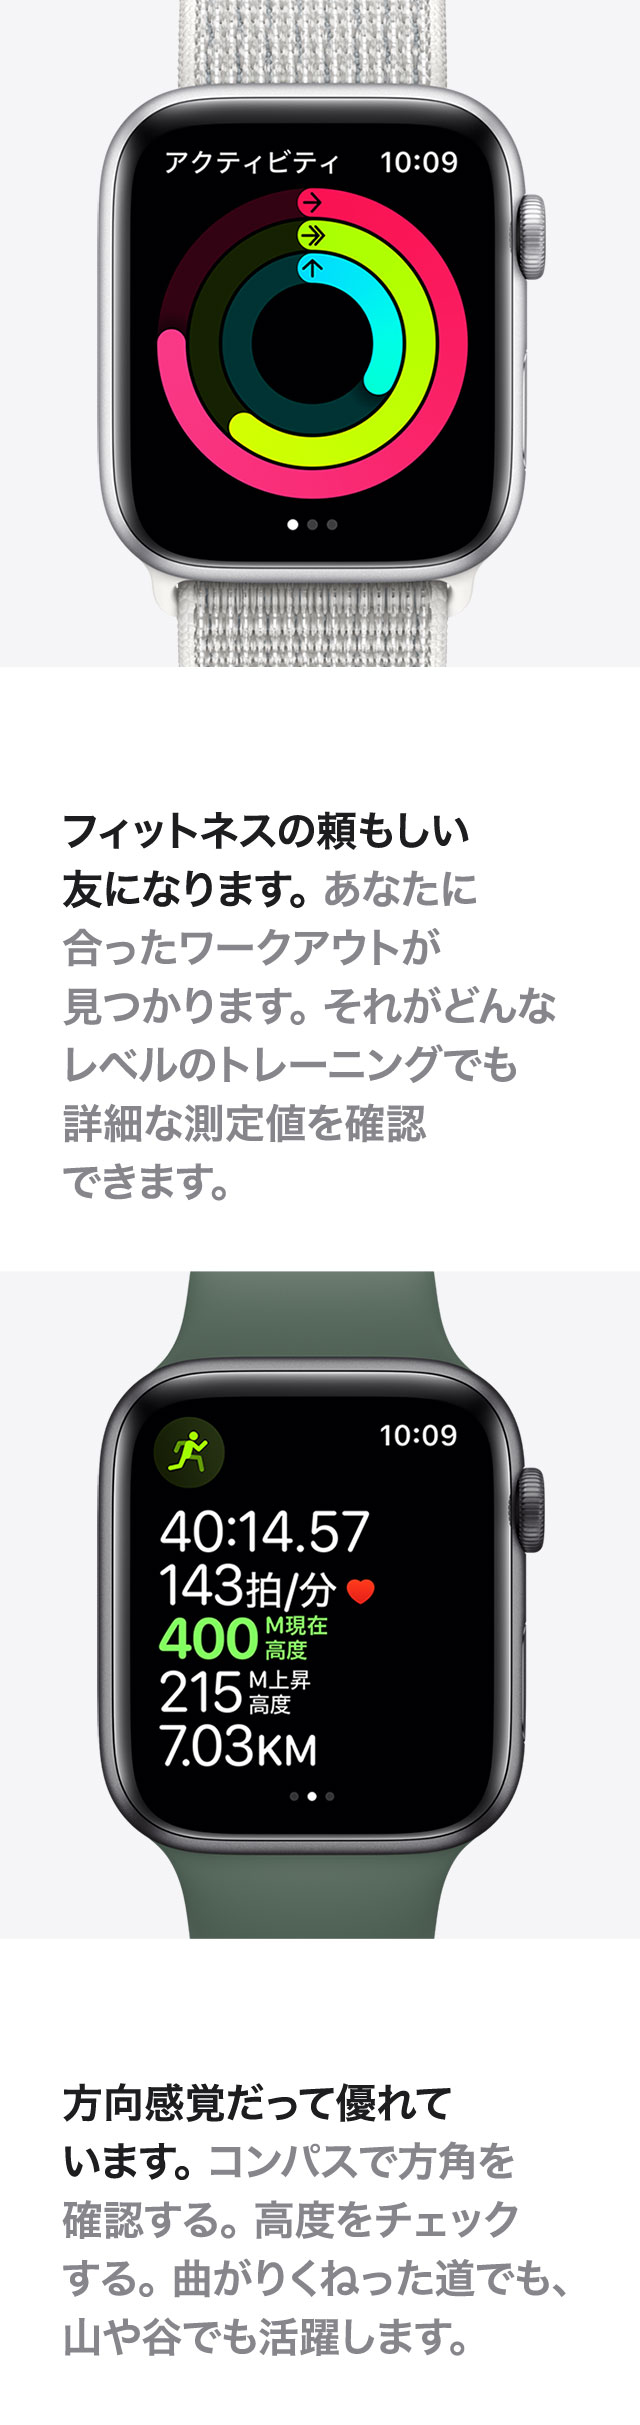 Apple Watch 製品情報 Appleインフォメーション エディオンメンバーズサイト